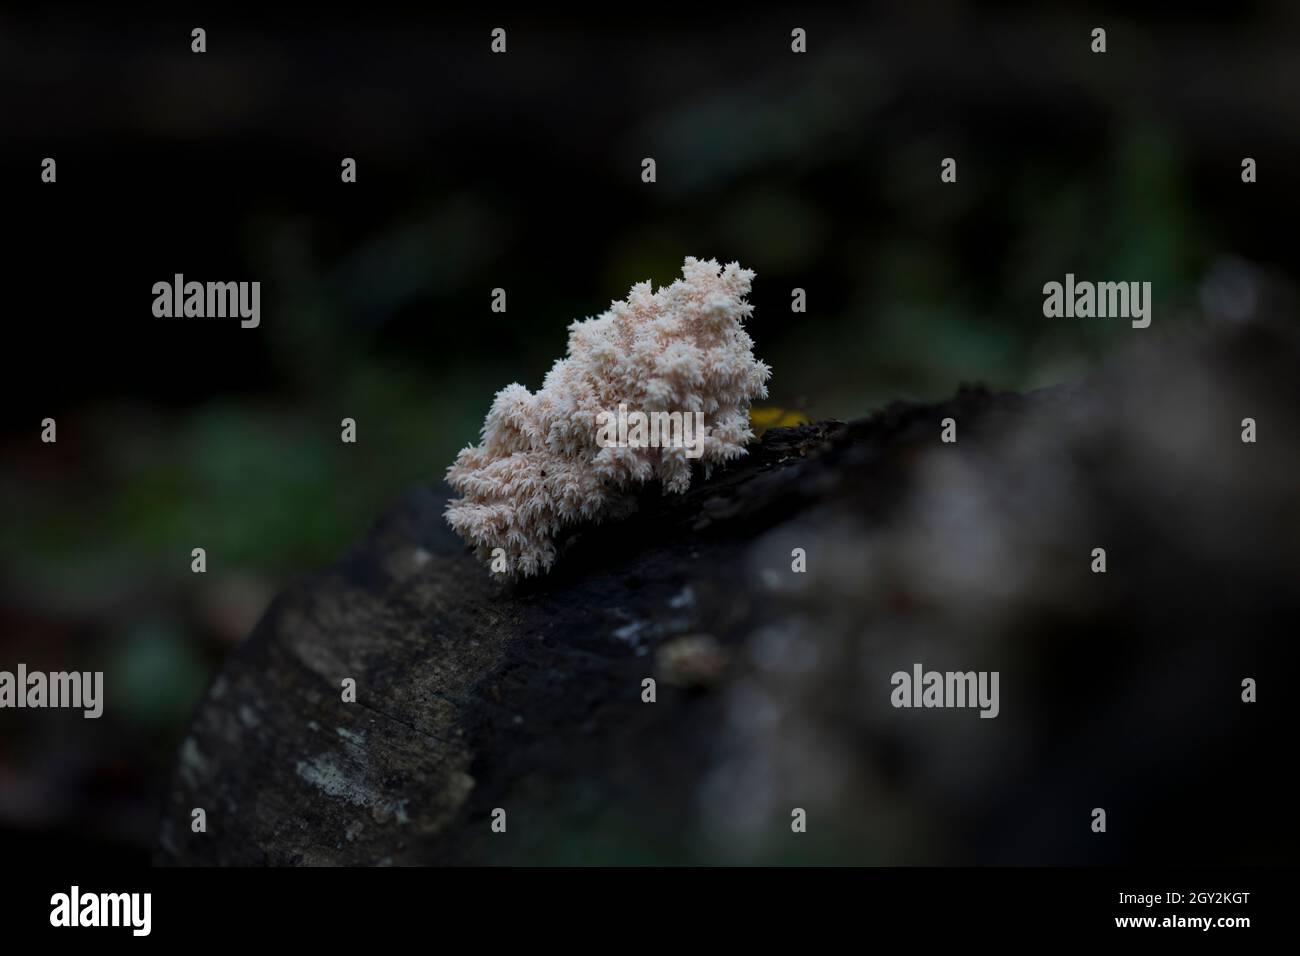 Löwen Mähne Pilz hericium coralloides wächst im Wald. Stockfoto